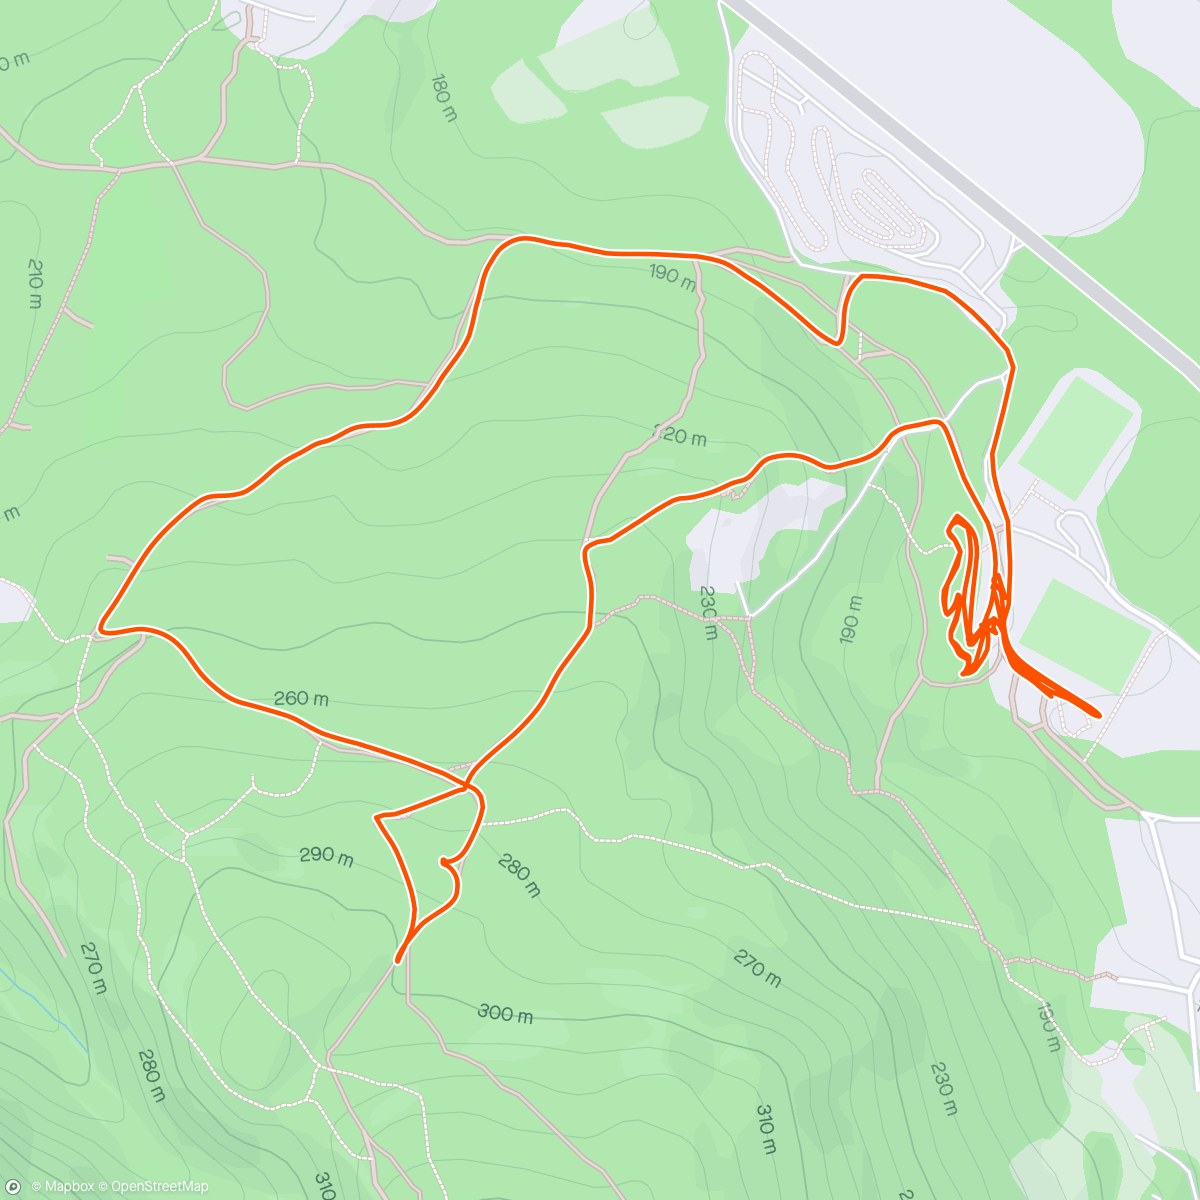 「Sykkeltrening Sogn CK」活動的地圖